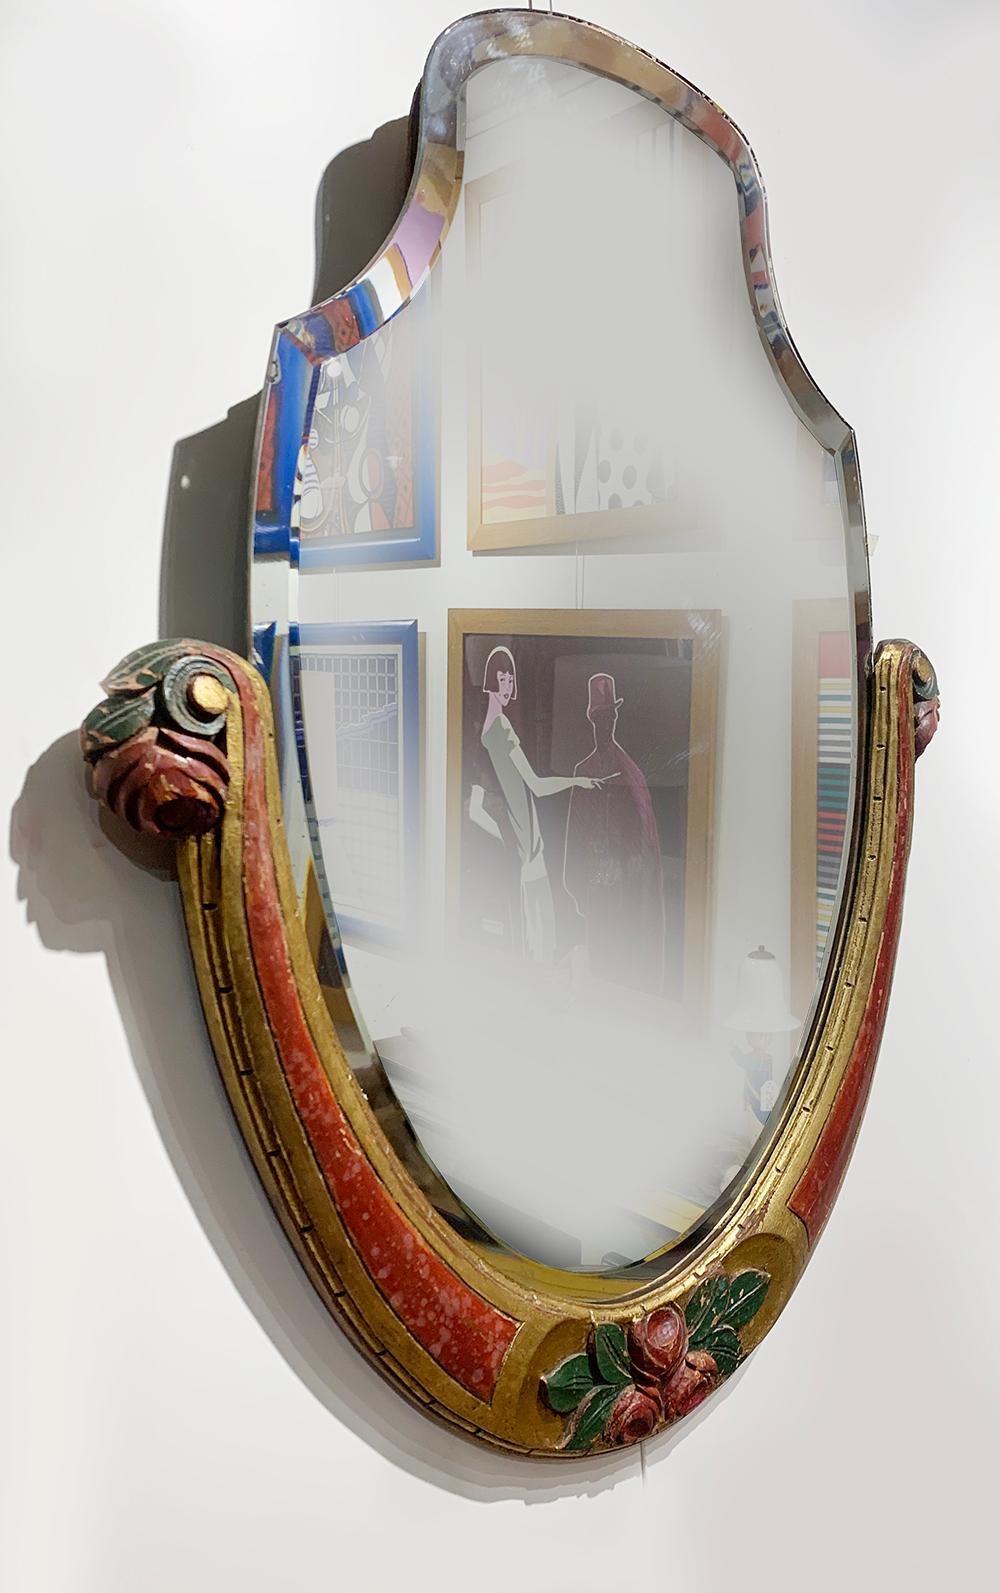 Bunter Jugendstil-Spiegel 
Mit einem handgeschnitzten Holzrahmen mit abgeschrägtem Spiegel, um 1920.